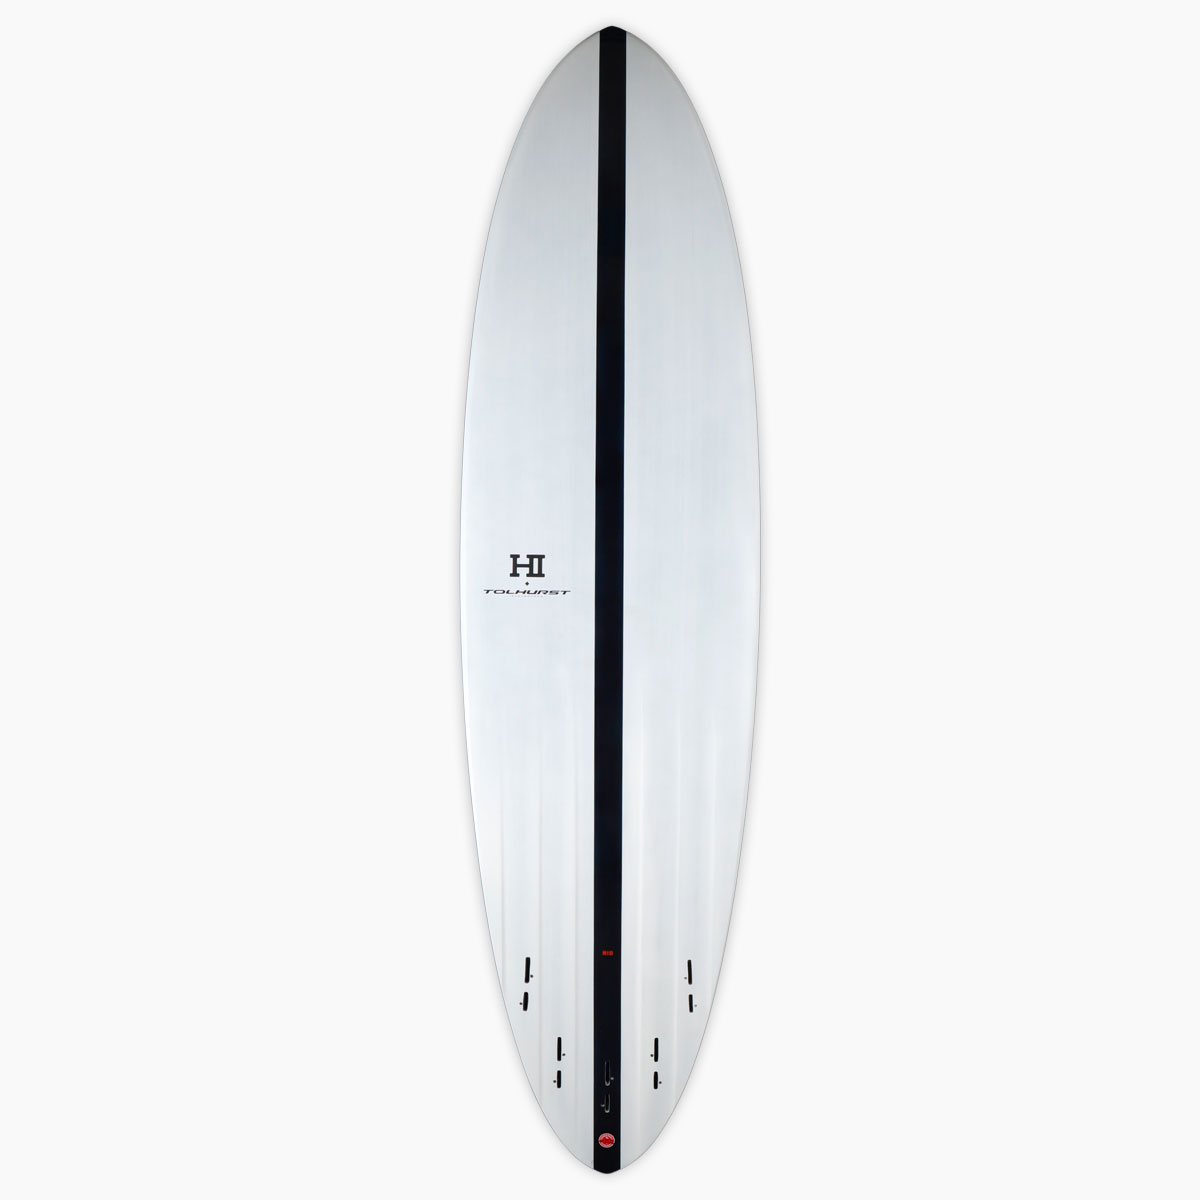 SurfBoardNet / ブランド:THUNDERBOLT TECHNOLOGIES モデル:MID 6 Blue 